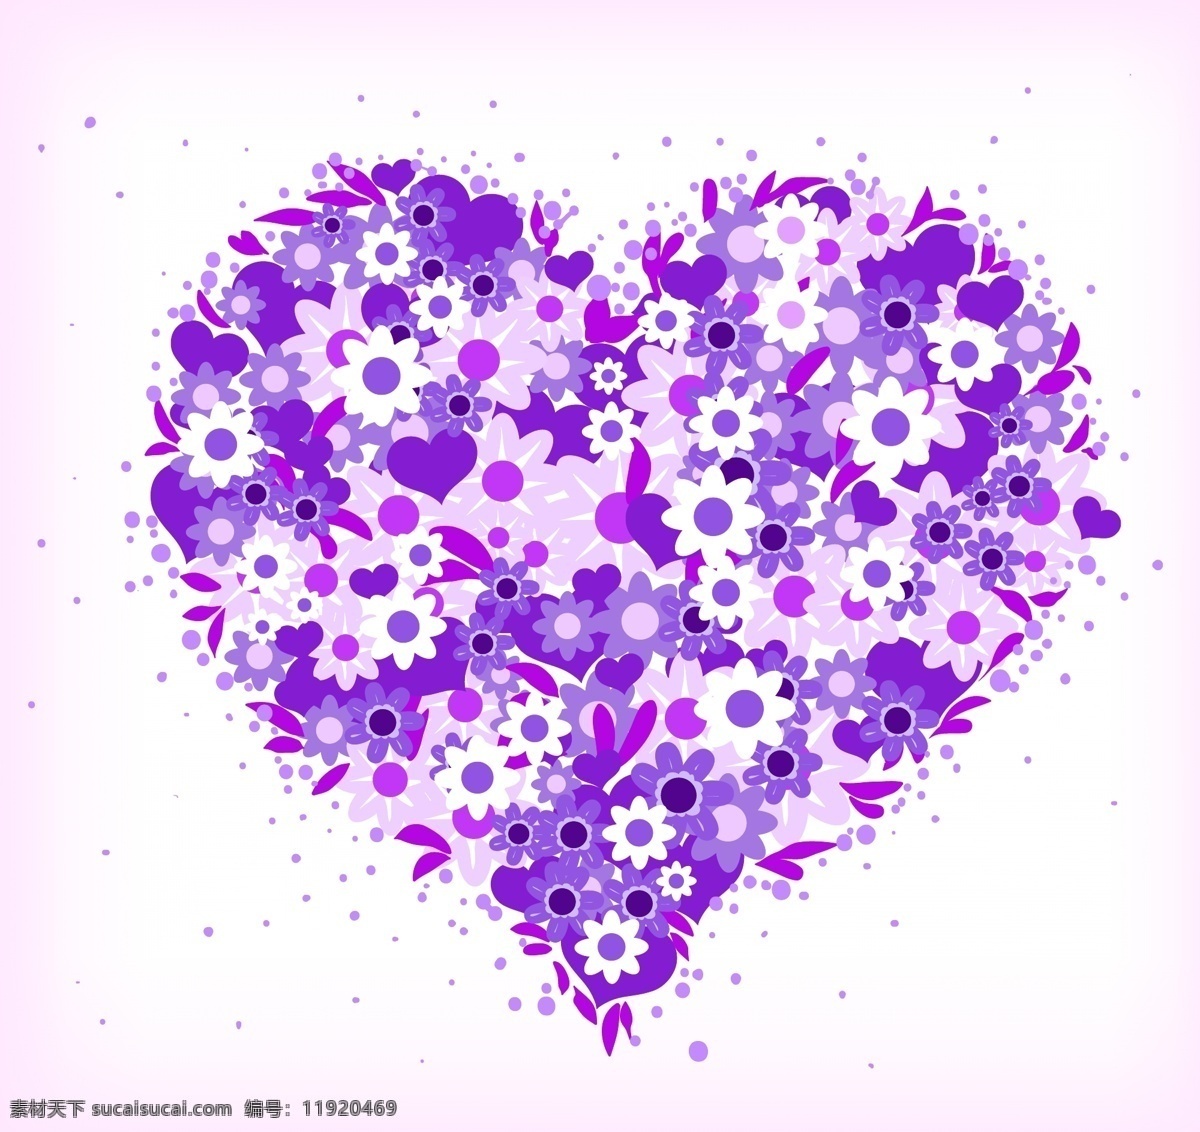 紫色 花朵 组成 心 爱情插画 卡通插画 浪漫卡通 心形图案 矢量图 其他矢量图